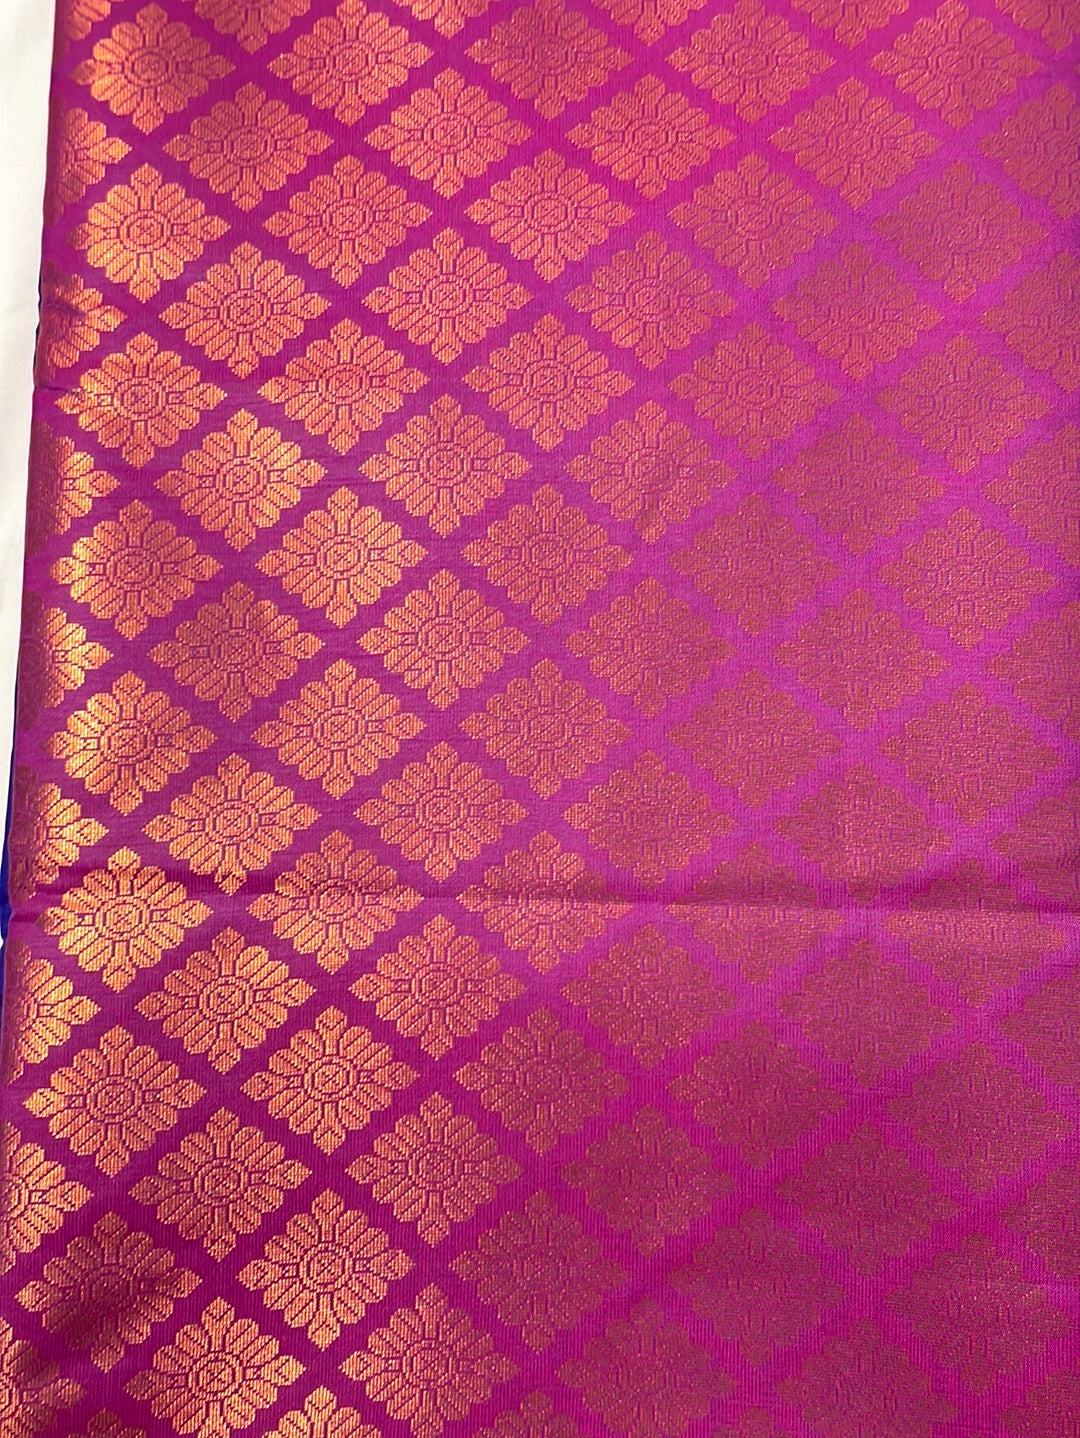 Kanjivaram Tissue Border Soft Silk Sarees (Royal Blue and Pink Colour)